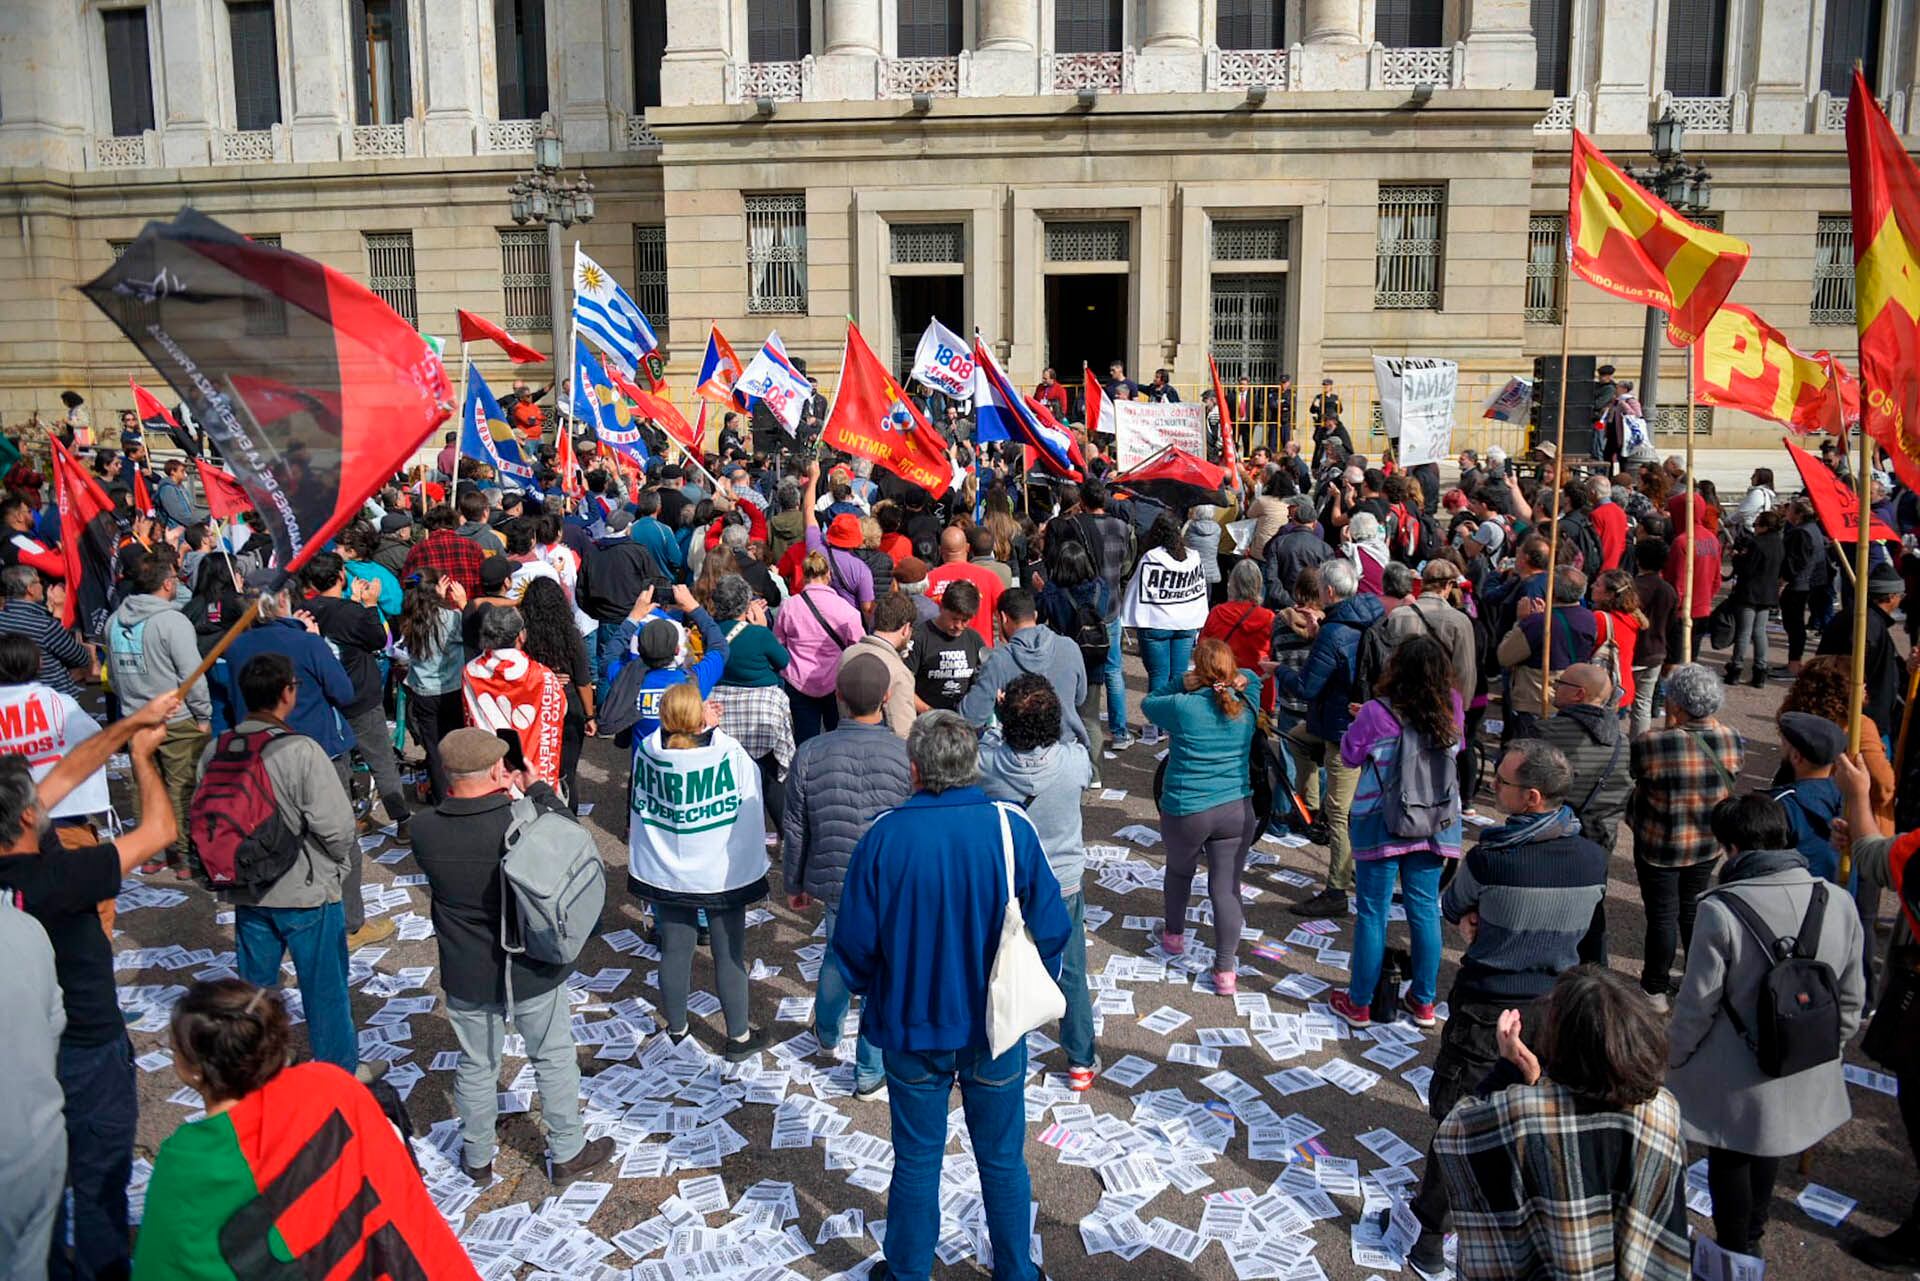 plebiscito pit cnt
El movimiento sindical contabilizó 430.023 firmas, que permiten que haya un plebiscito sobre la seguridad social en Uruguay (PIT-CNT)